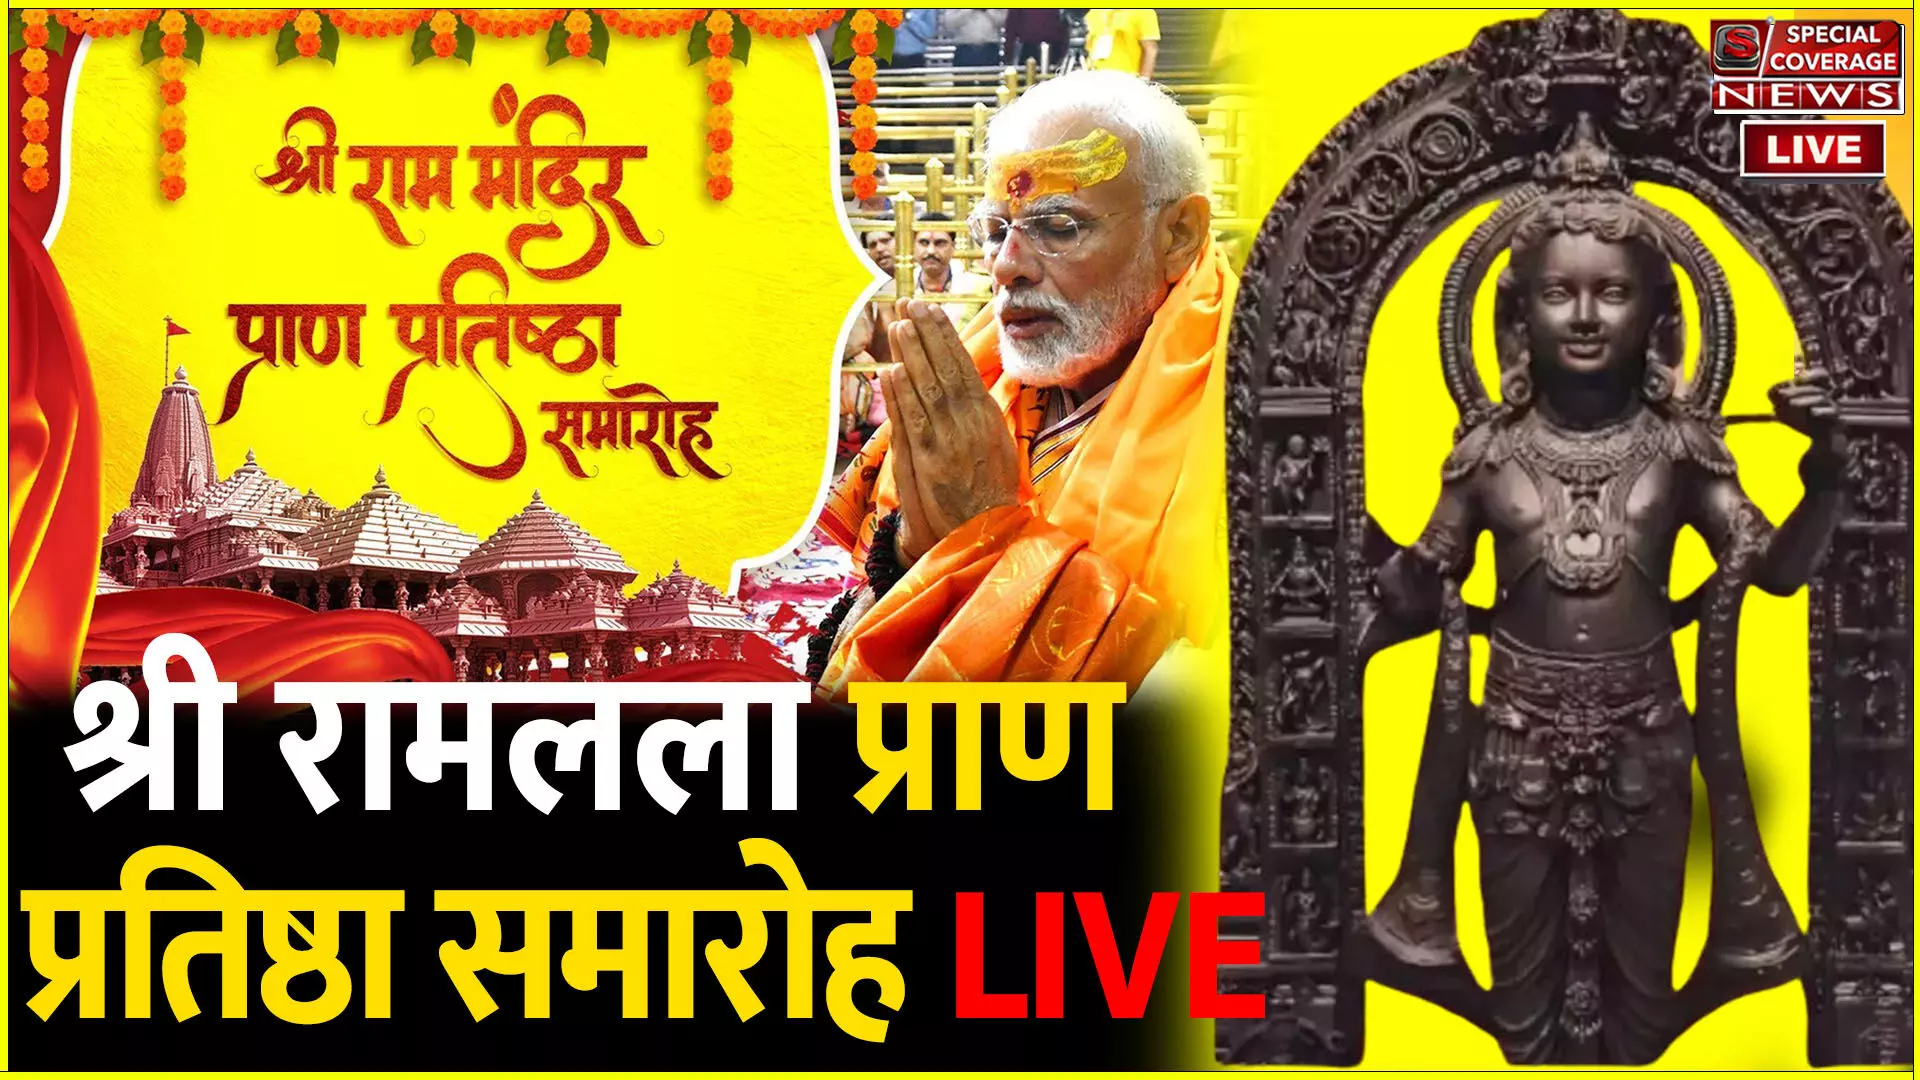 Ram Mandir Pran Pratishta LIVE | अयोध्या में श्रीराम मंदिर प्राण प्रतिष्ठा समारोह लाइव